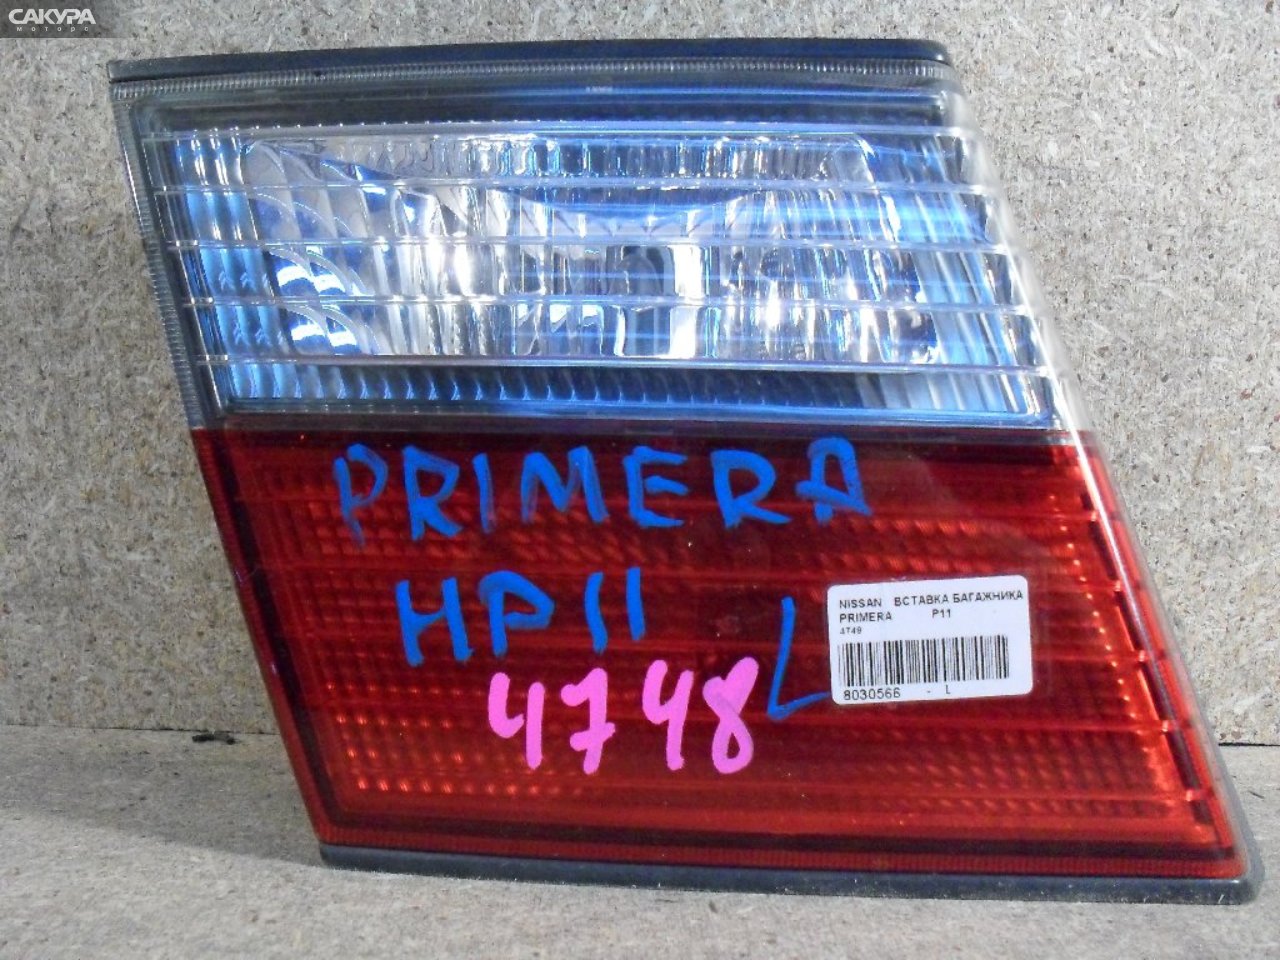 Фонарь вставка багажника левый Nissan Primera P11 4748: купить в Сакура Абакан.